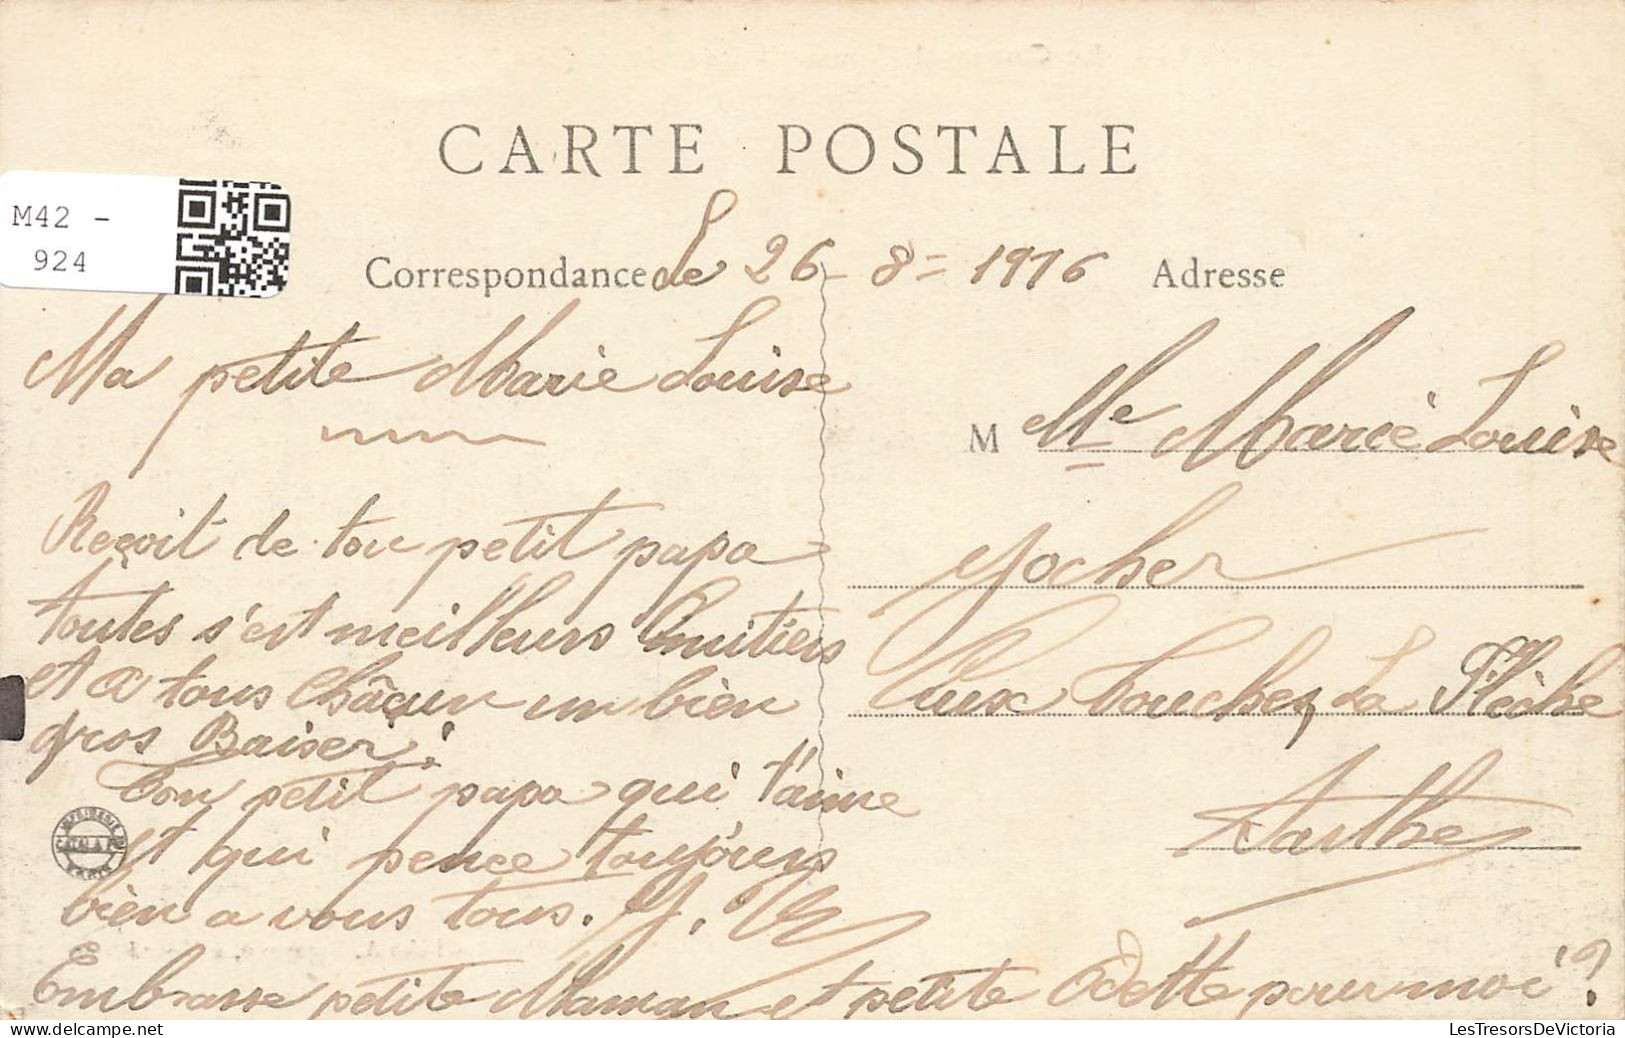 FRANCE - Le Quesnel (Somme) - Vue Générale - Vue De Face - Le Château (Côté Nord) - Carte Postale Ancienne - Montdidier